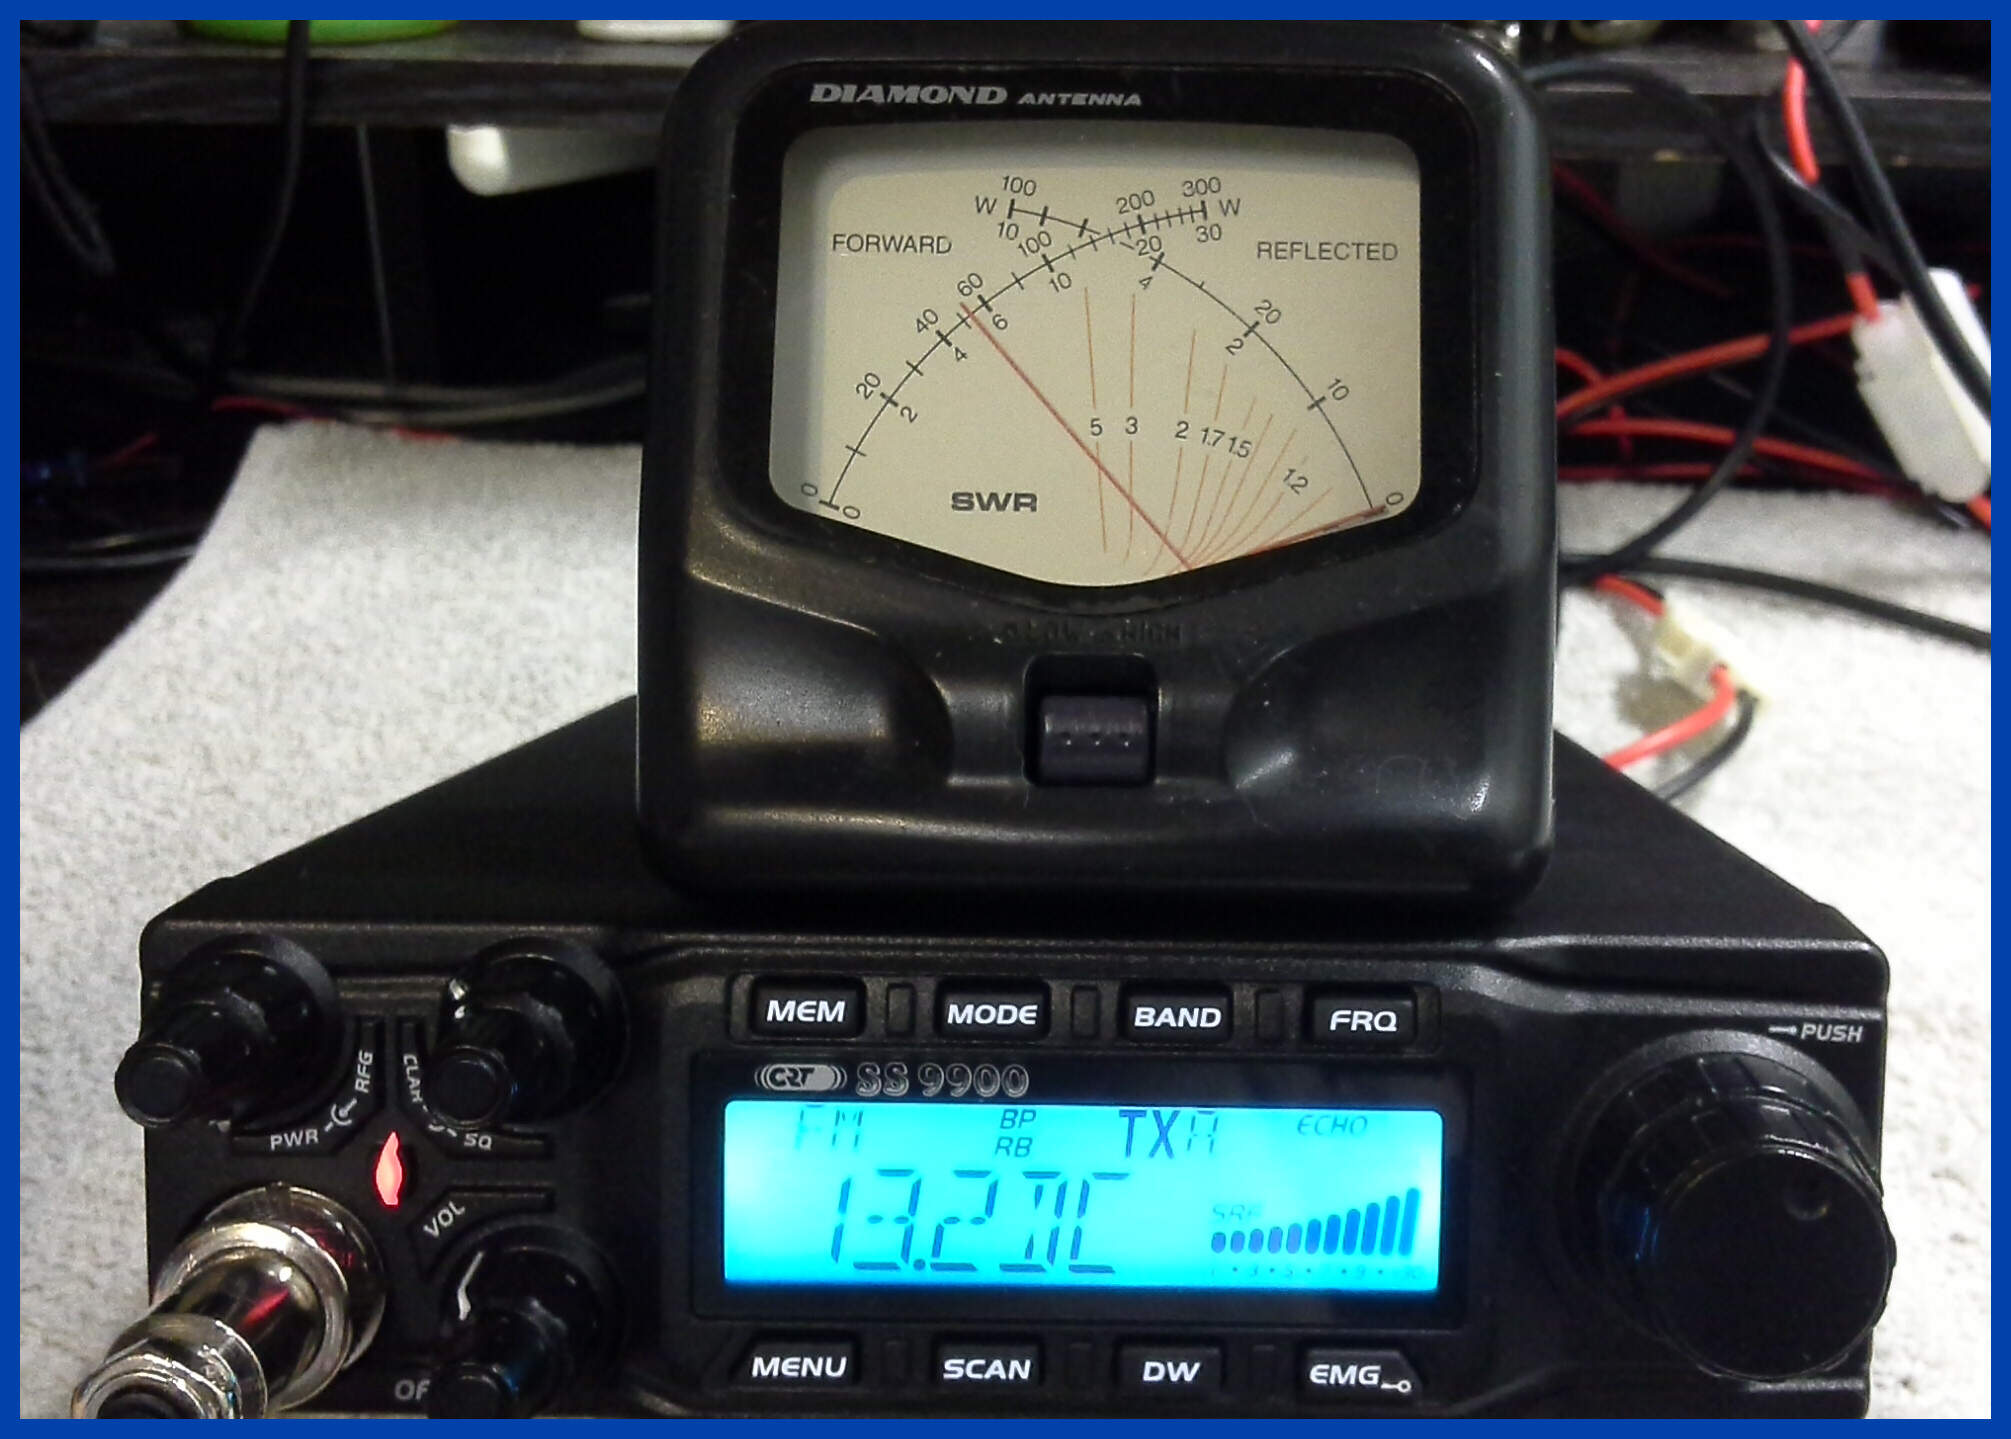 CRT SS9900 CB Radio Transmitting